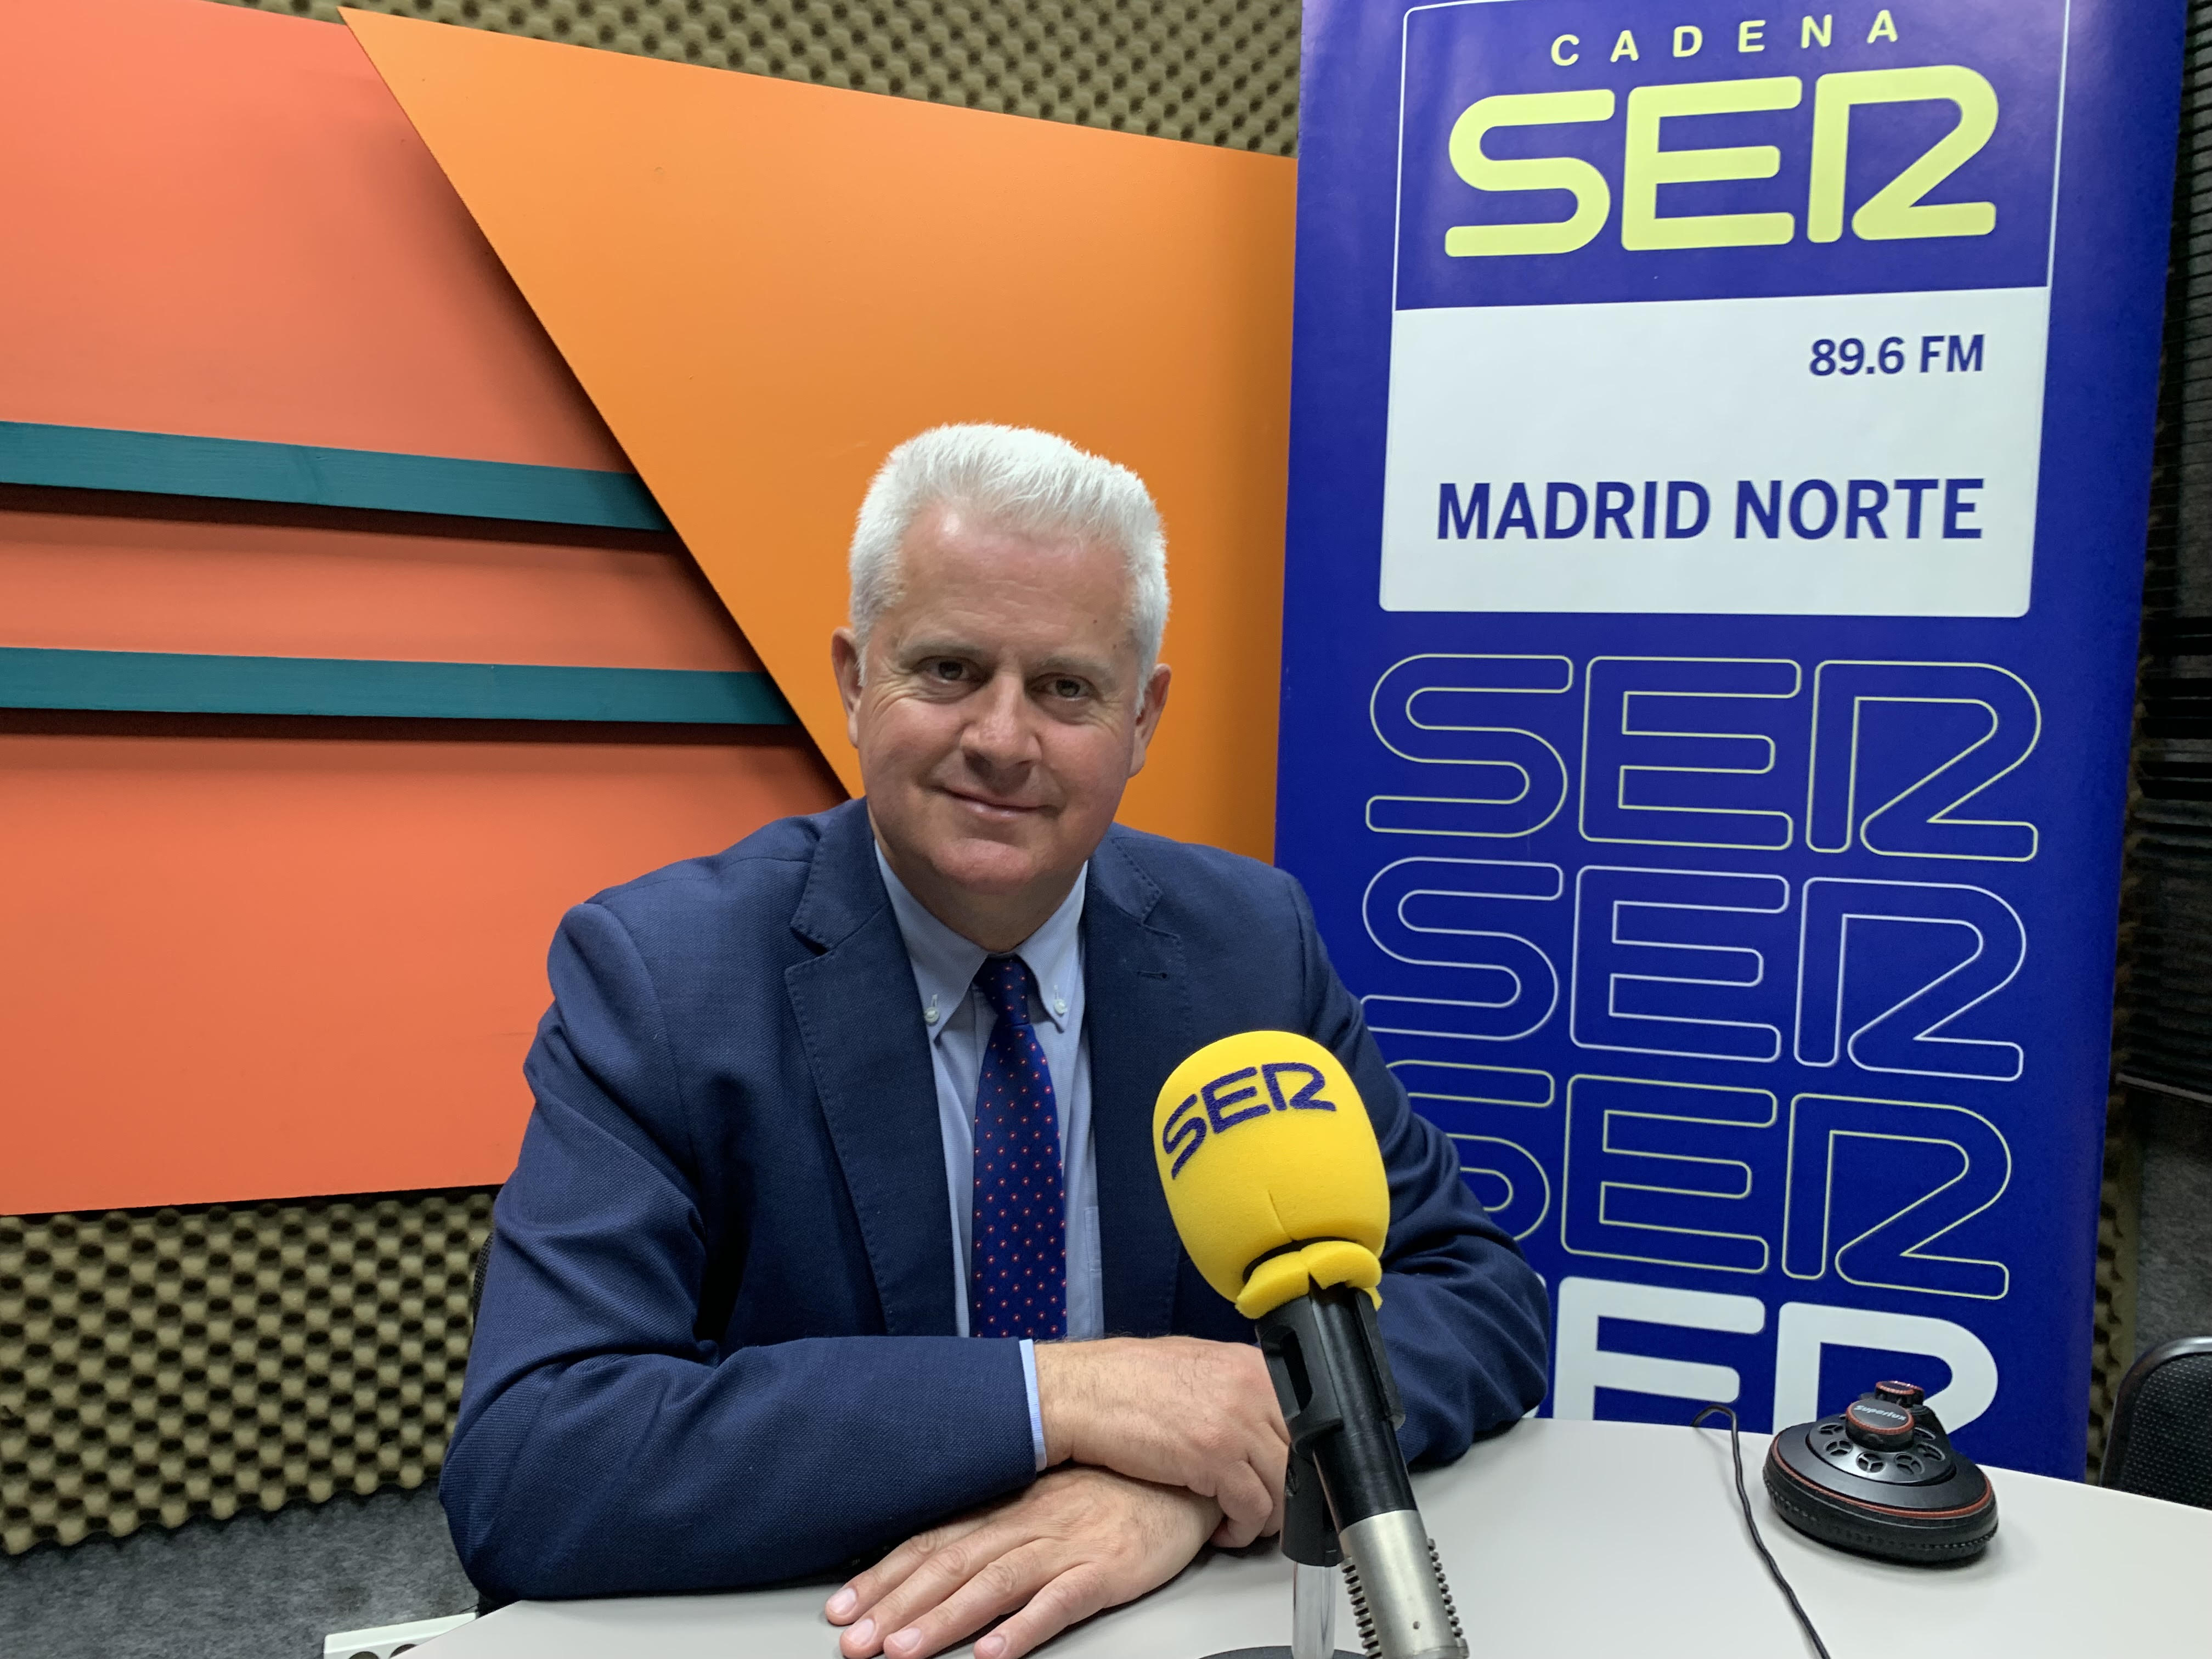 Entrevista a Narciso Romero, candidato a revalidar la alcaldía de San Sebastián de los Reyes por el PSOE en la programación especial del 28M en SER Madrid Norte